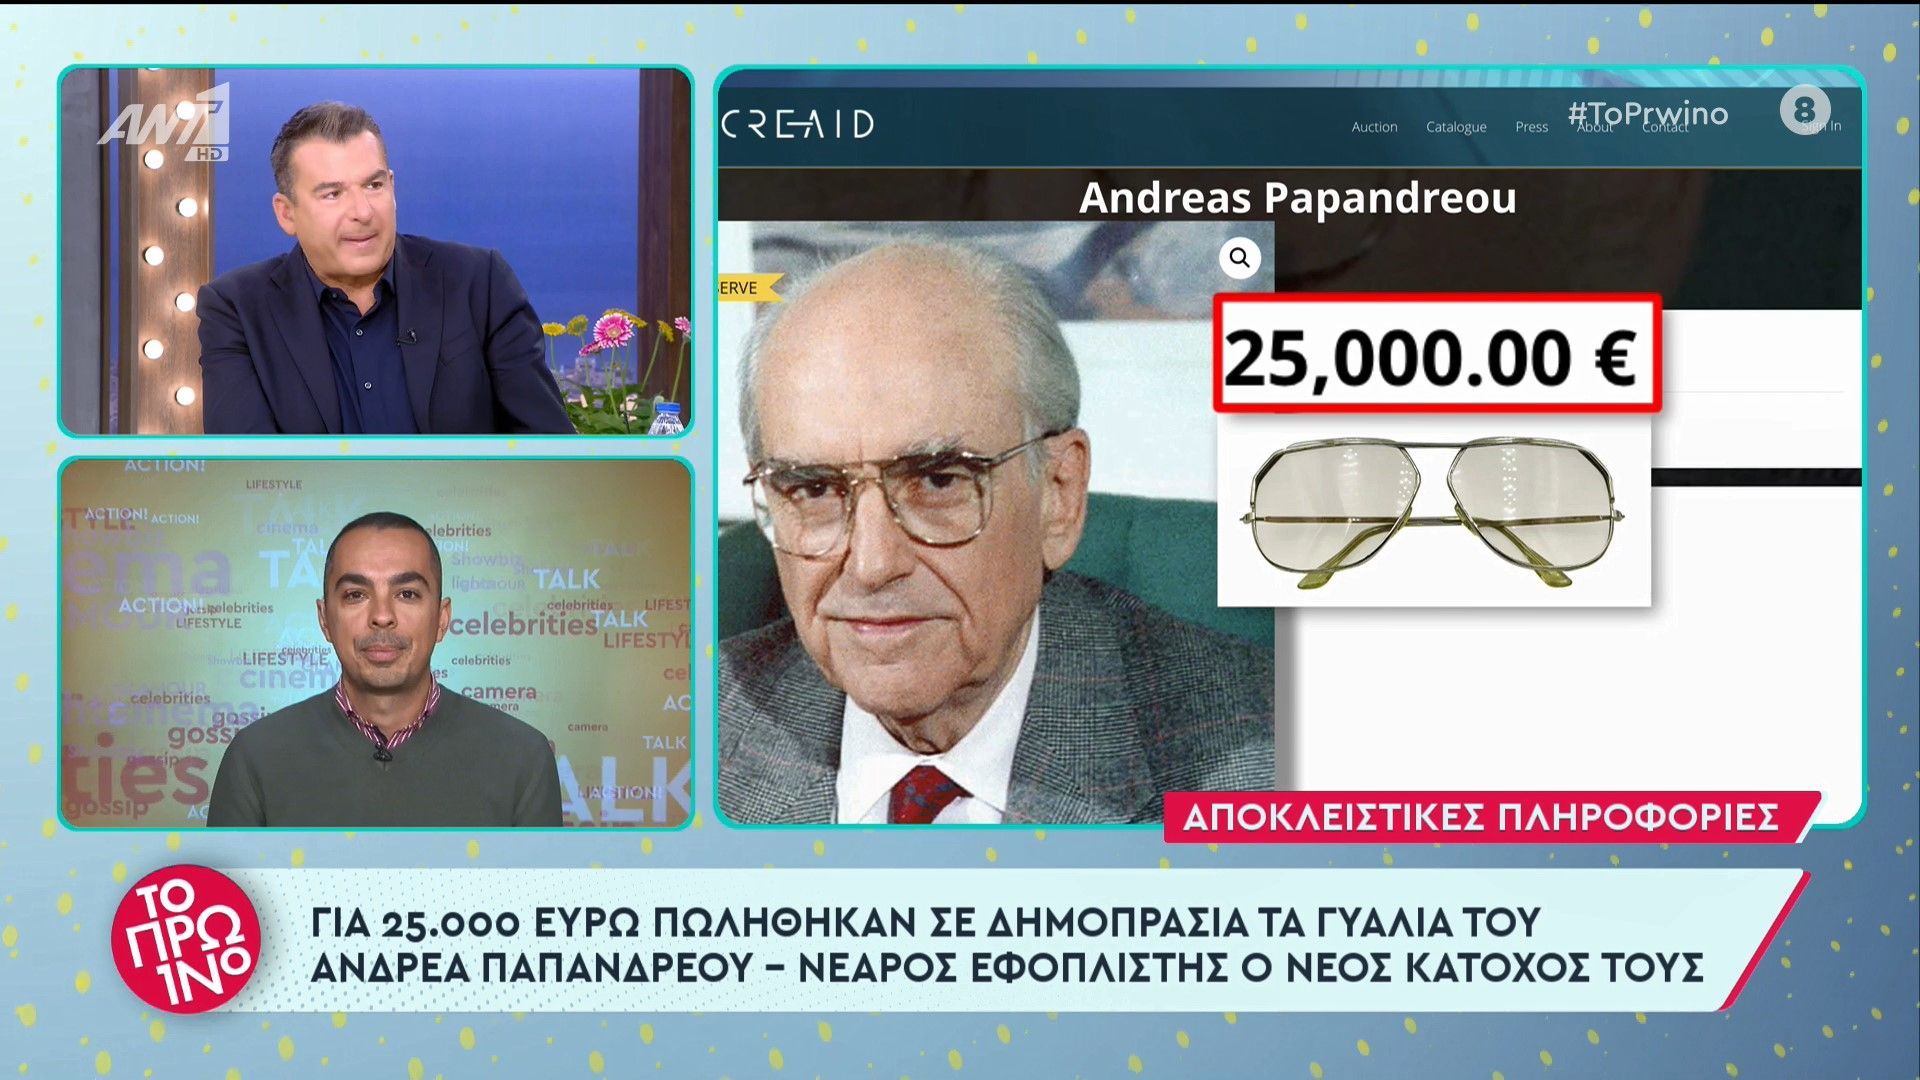 Ανδρέας Παπανδρέου: Πουλήθηκαν 25.000 ευρώ σε δημοπρασία τα εμβληματικά γυαλιά του – Τα απέκτησε εφοπλιστής